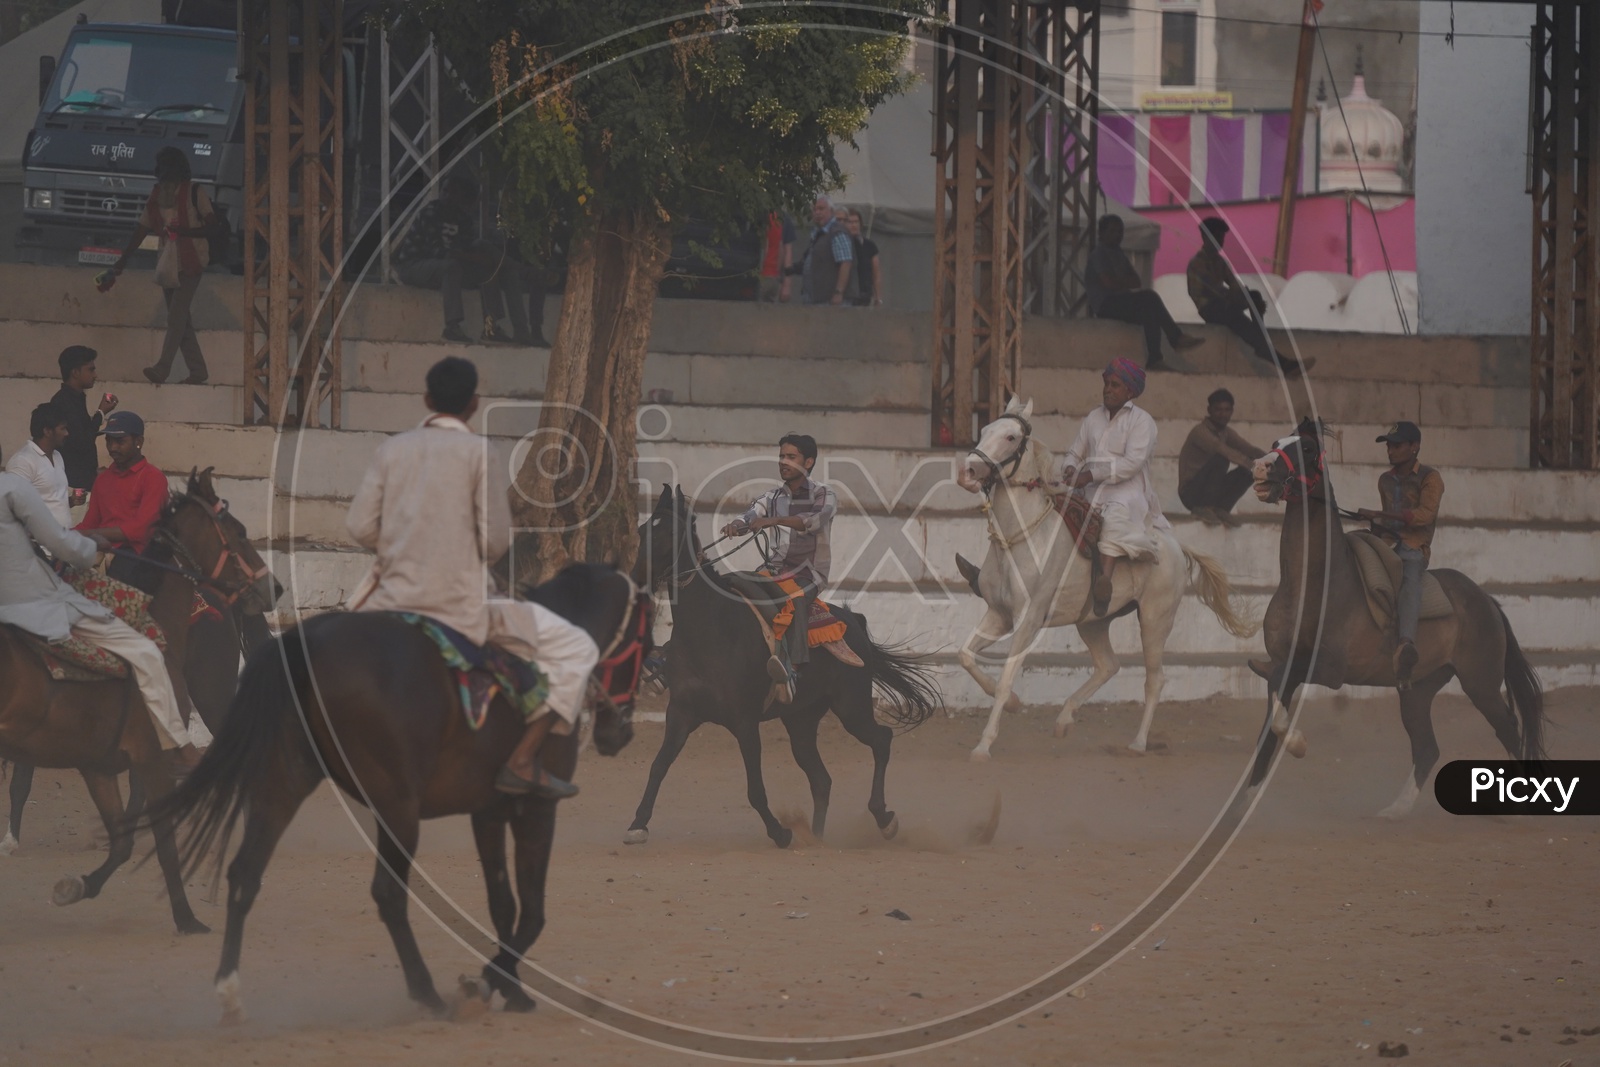 Rajastani Men riding a Horses at Pushkar Camel Fair, 2018